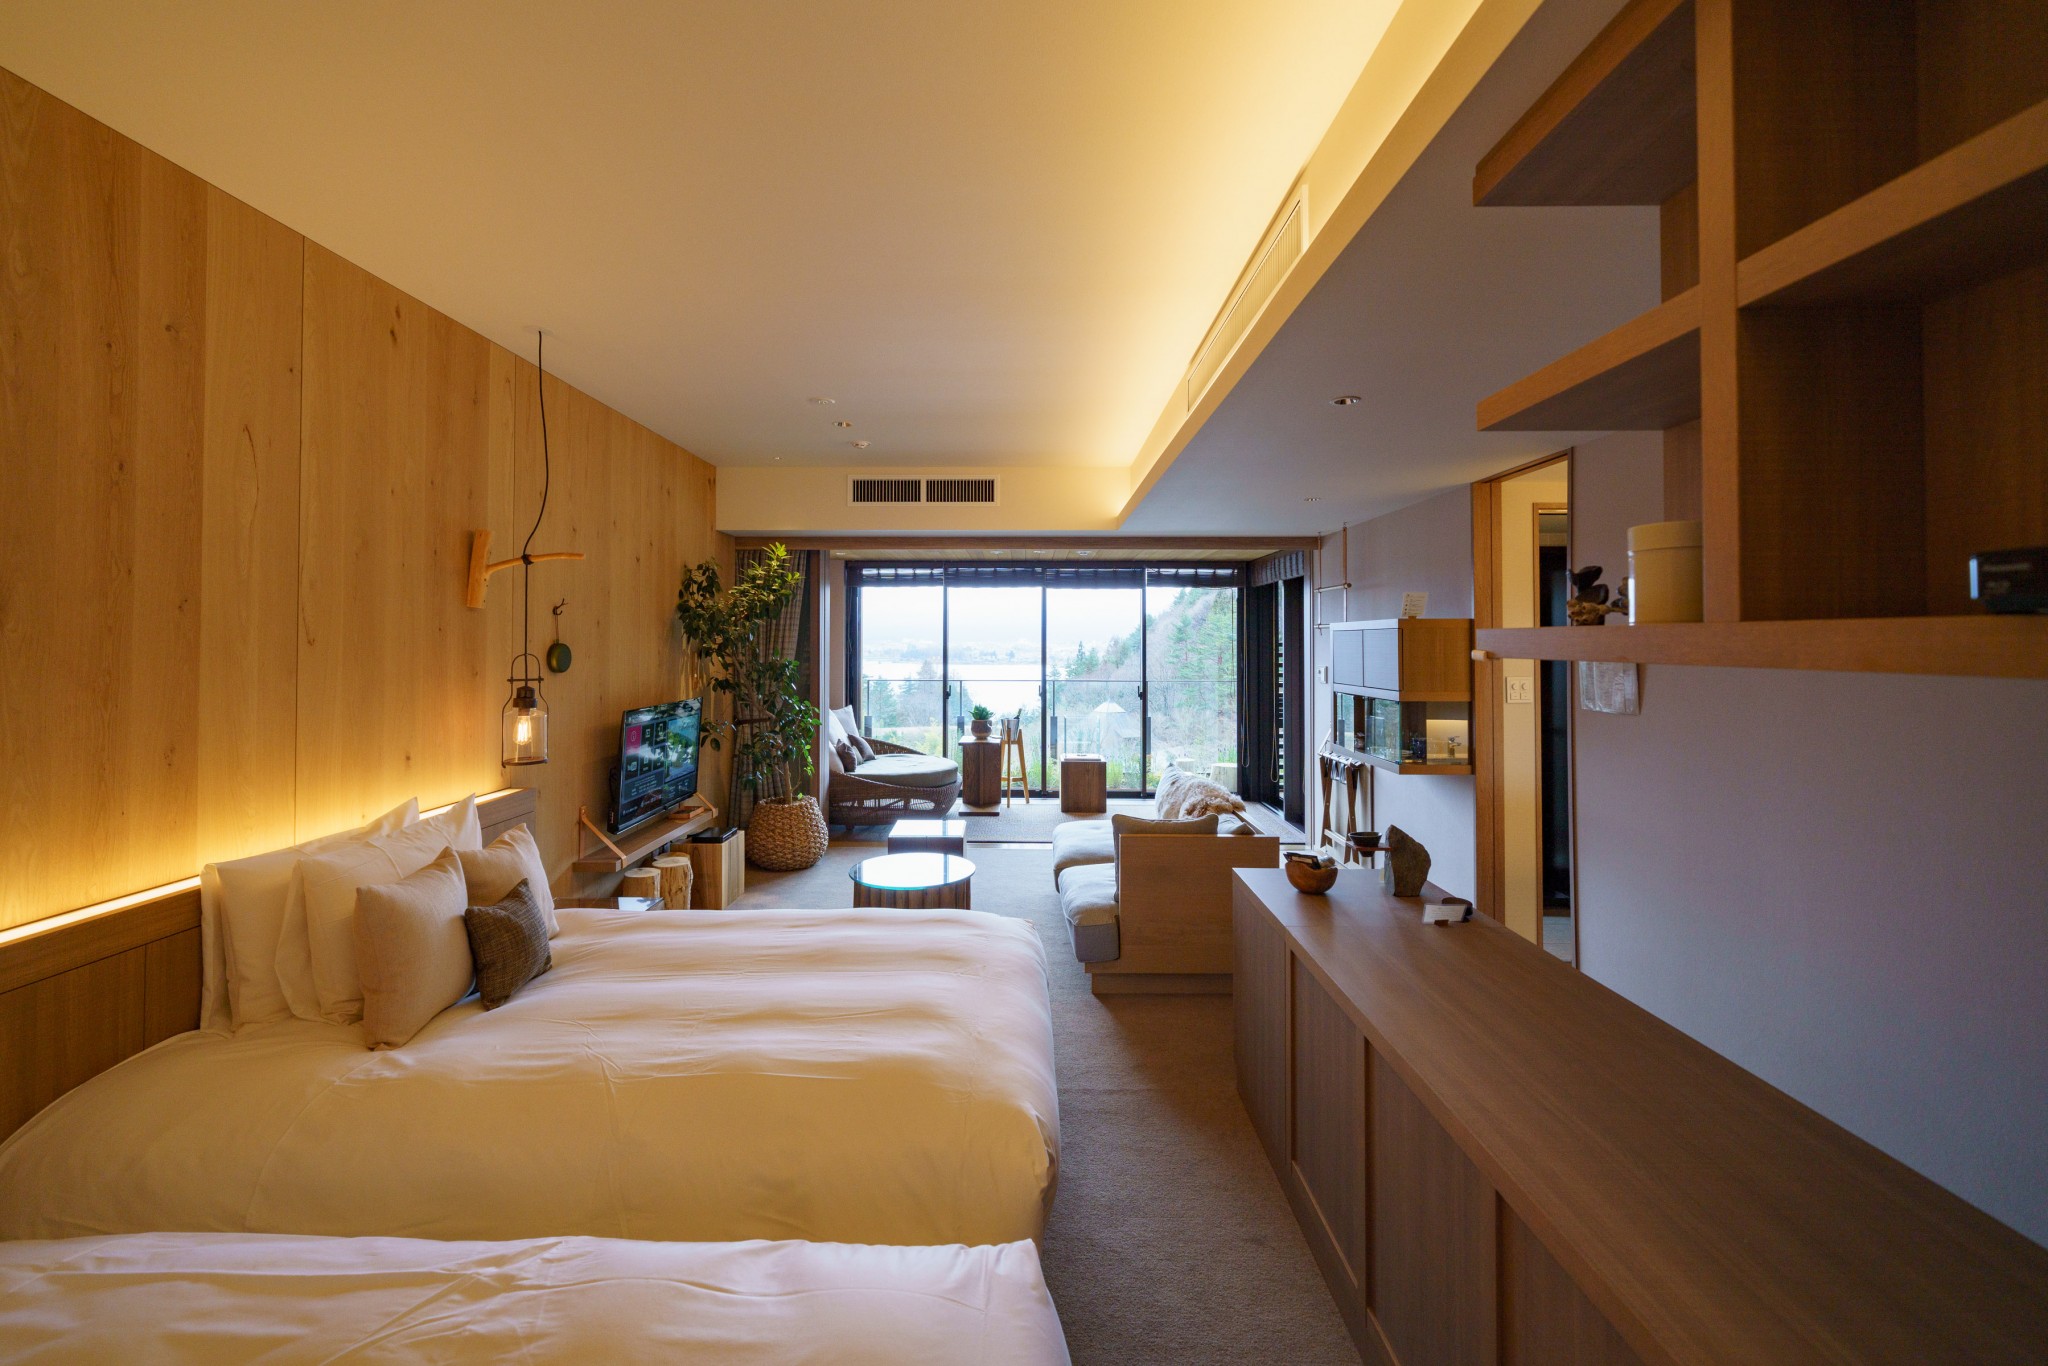 客室は木材を多く使ったインテリア。どの部屋からも富士山と森を眺めることができる。インテリアバルコニーには二酸化炭素を出さないエコな暖炉が。